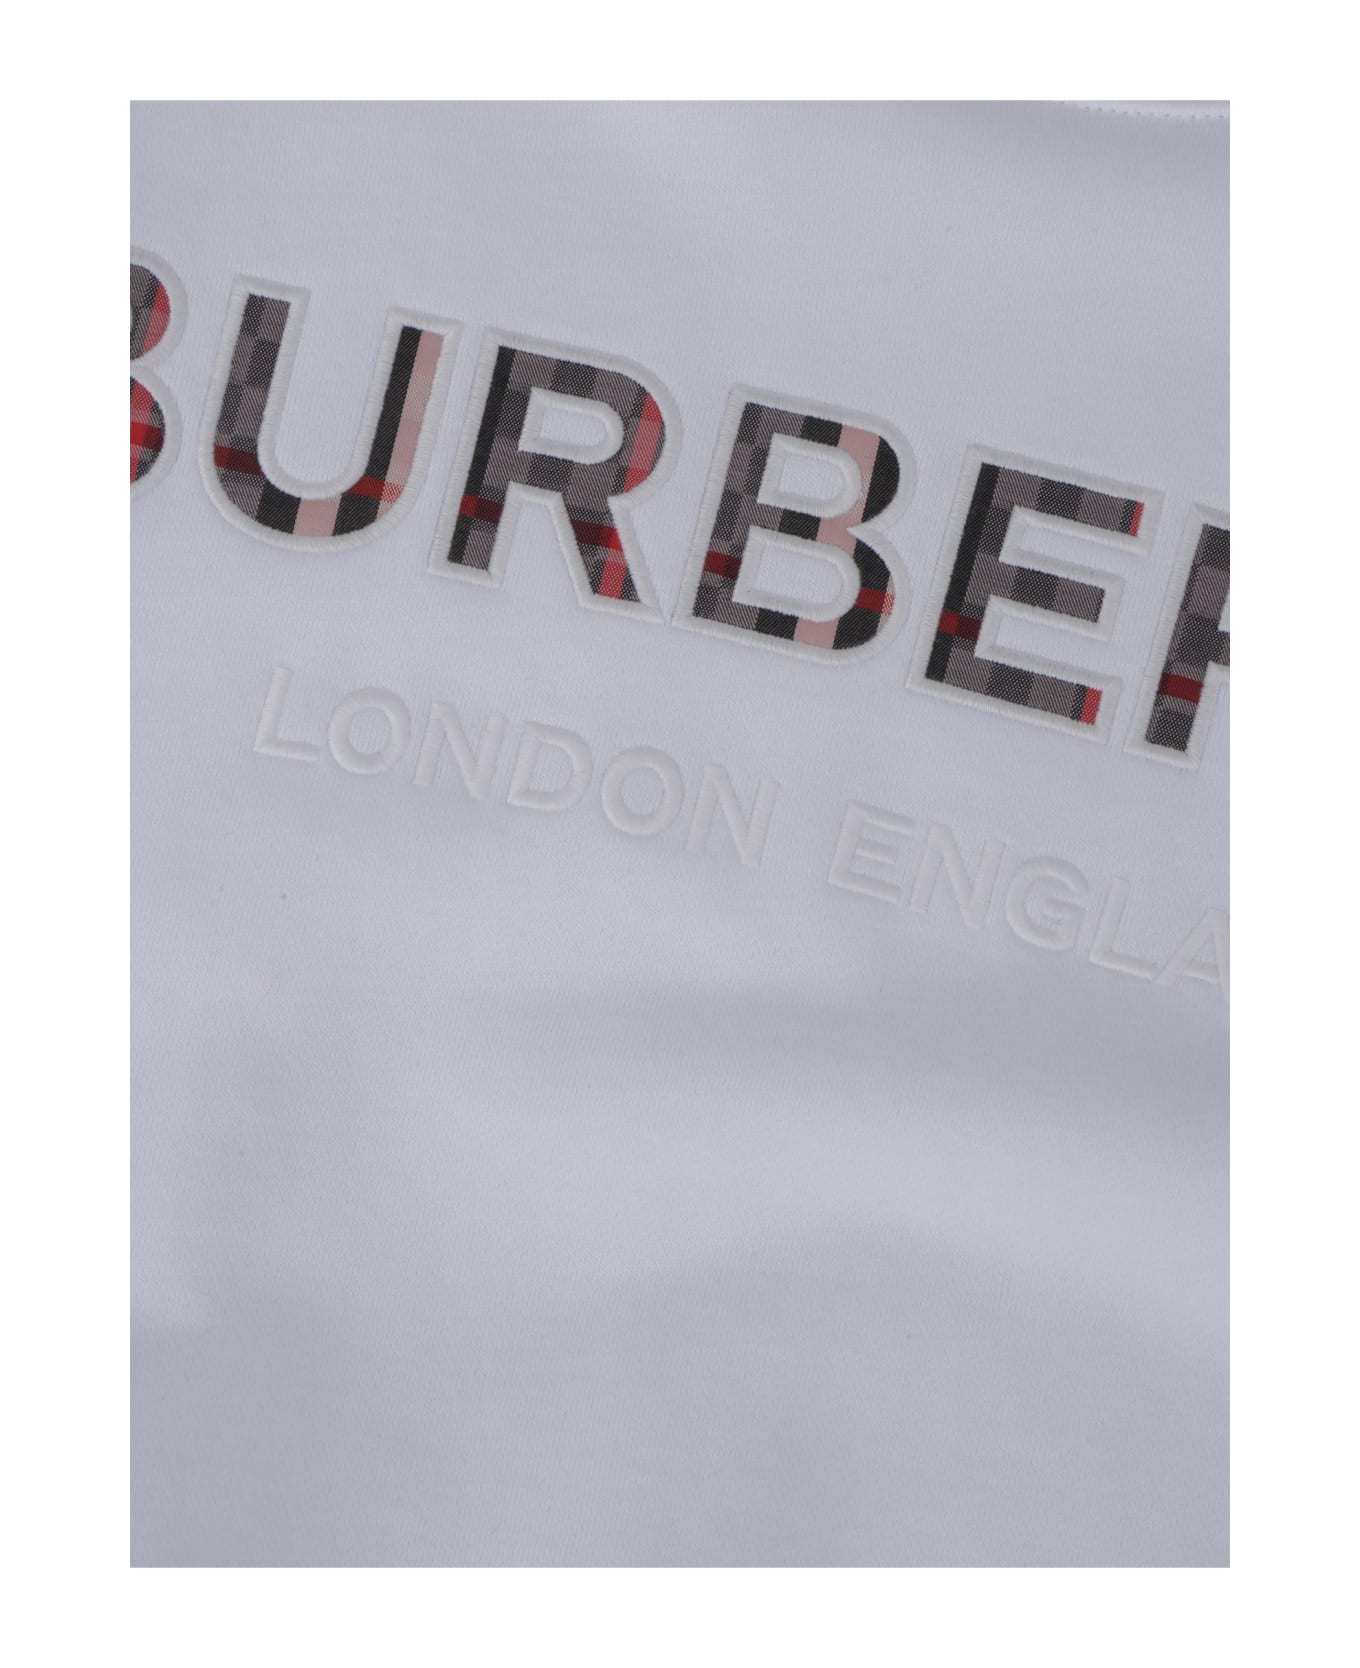 Burberry Eugene Sweatshirt For Boys - White